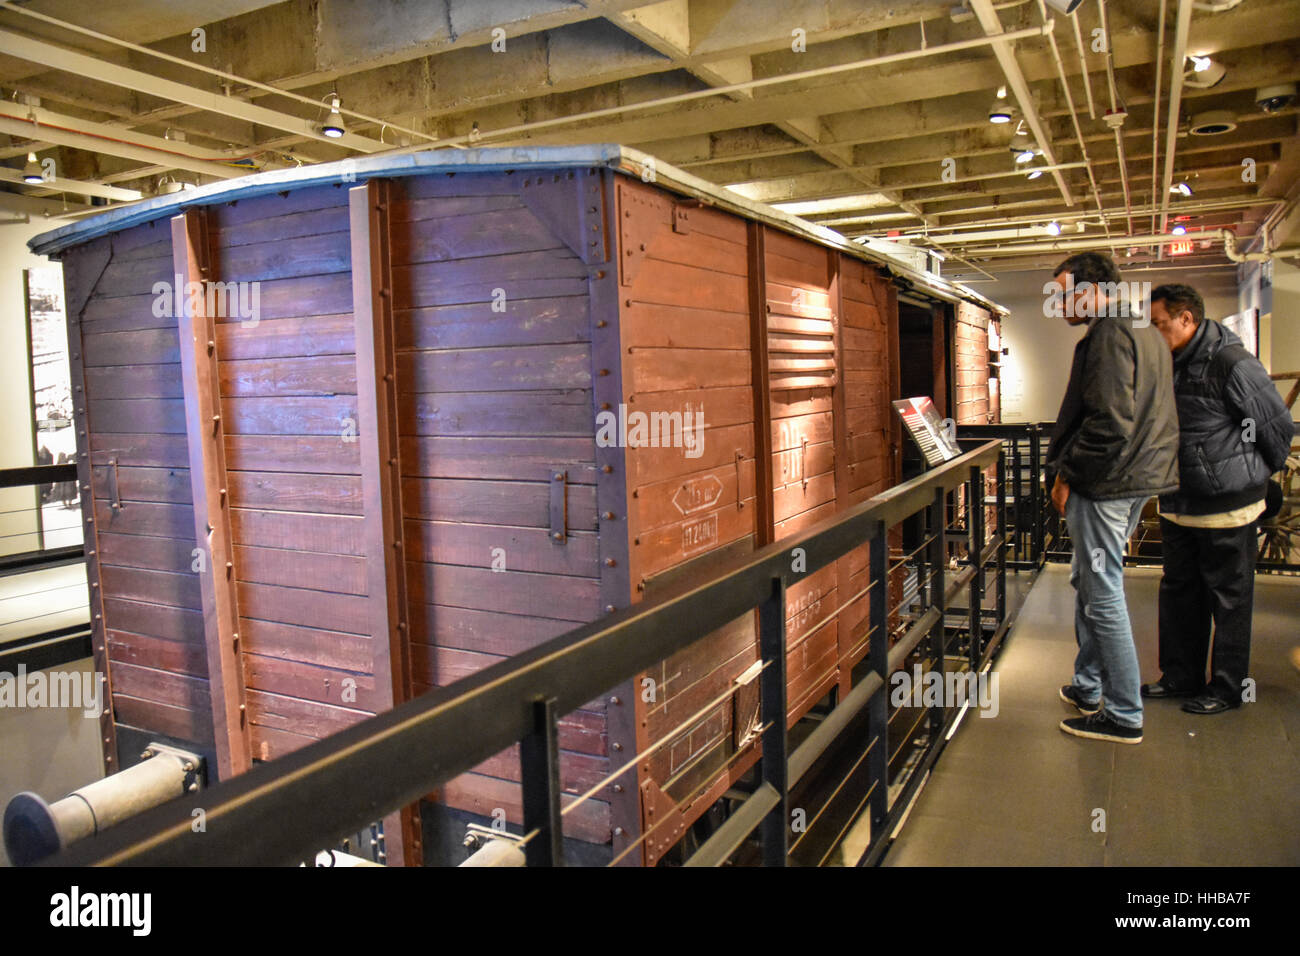 Washington, DC - vista interior del Museo Memorial del Holocausto. Imágenes reales de los deportados, la propaganda Nazi, crematorio. Foto de stock